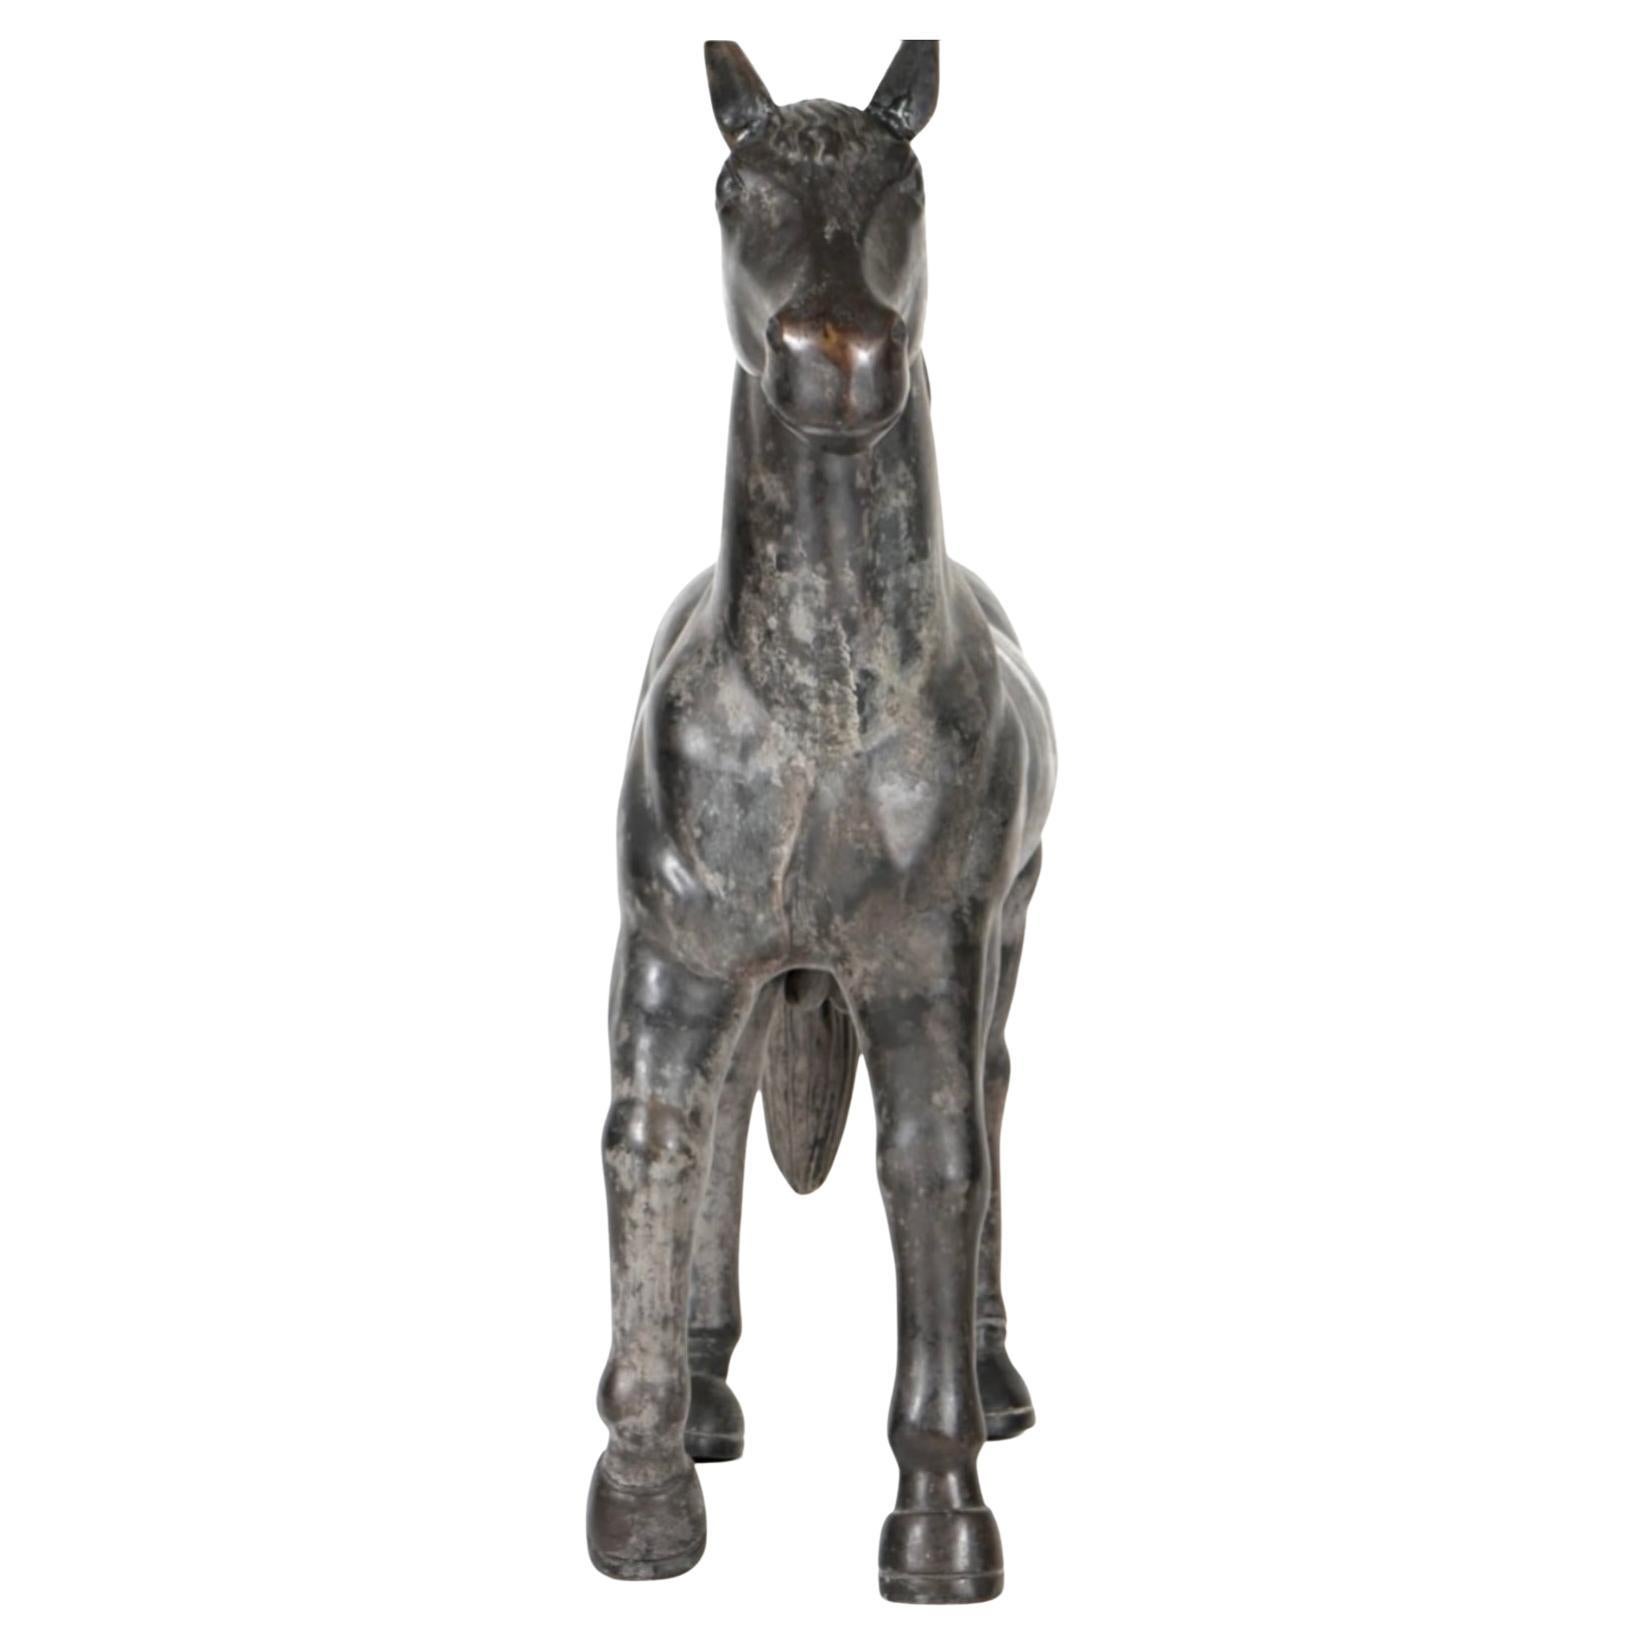 Il s'agit d'une grande figure de cheval en bronze patiné. Il est presque réaliste et présente de superbes détails de poney, de la tête à la queue. Pas de signature visible.